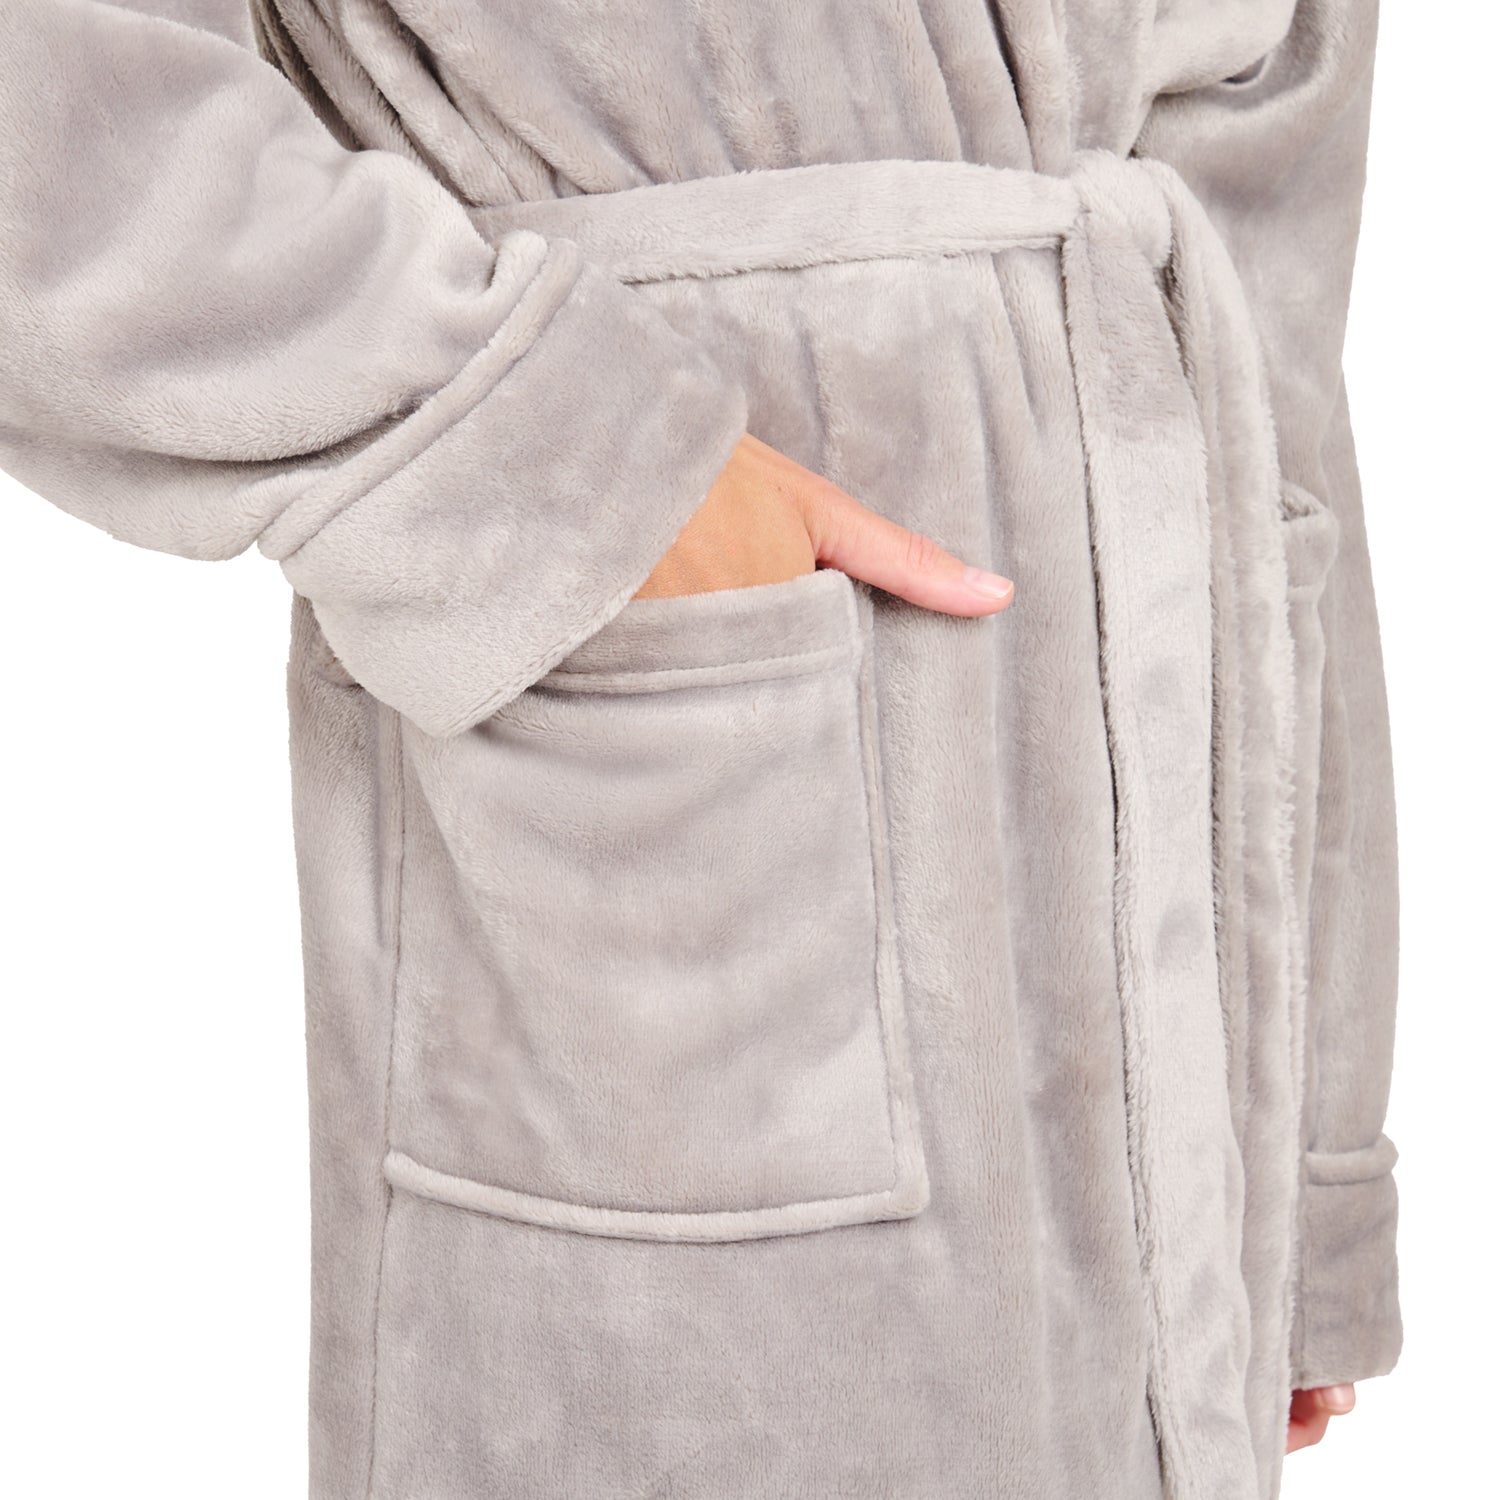 Detailansicht der Tasche eines Fleece-Bademantels in die eine Hand eingesteckt ist isoliert auf weißem Hintergrund.